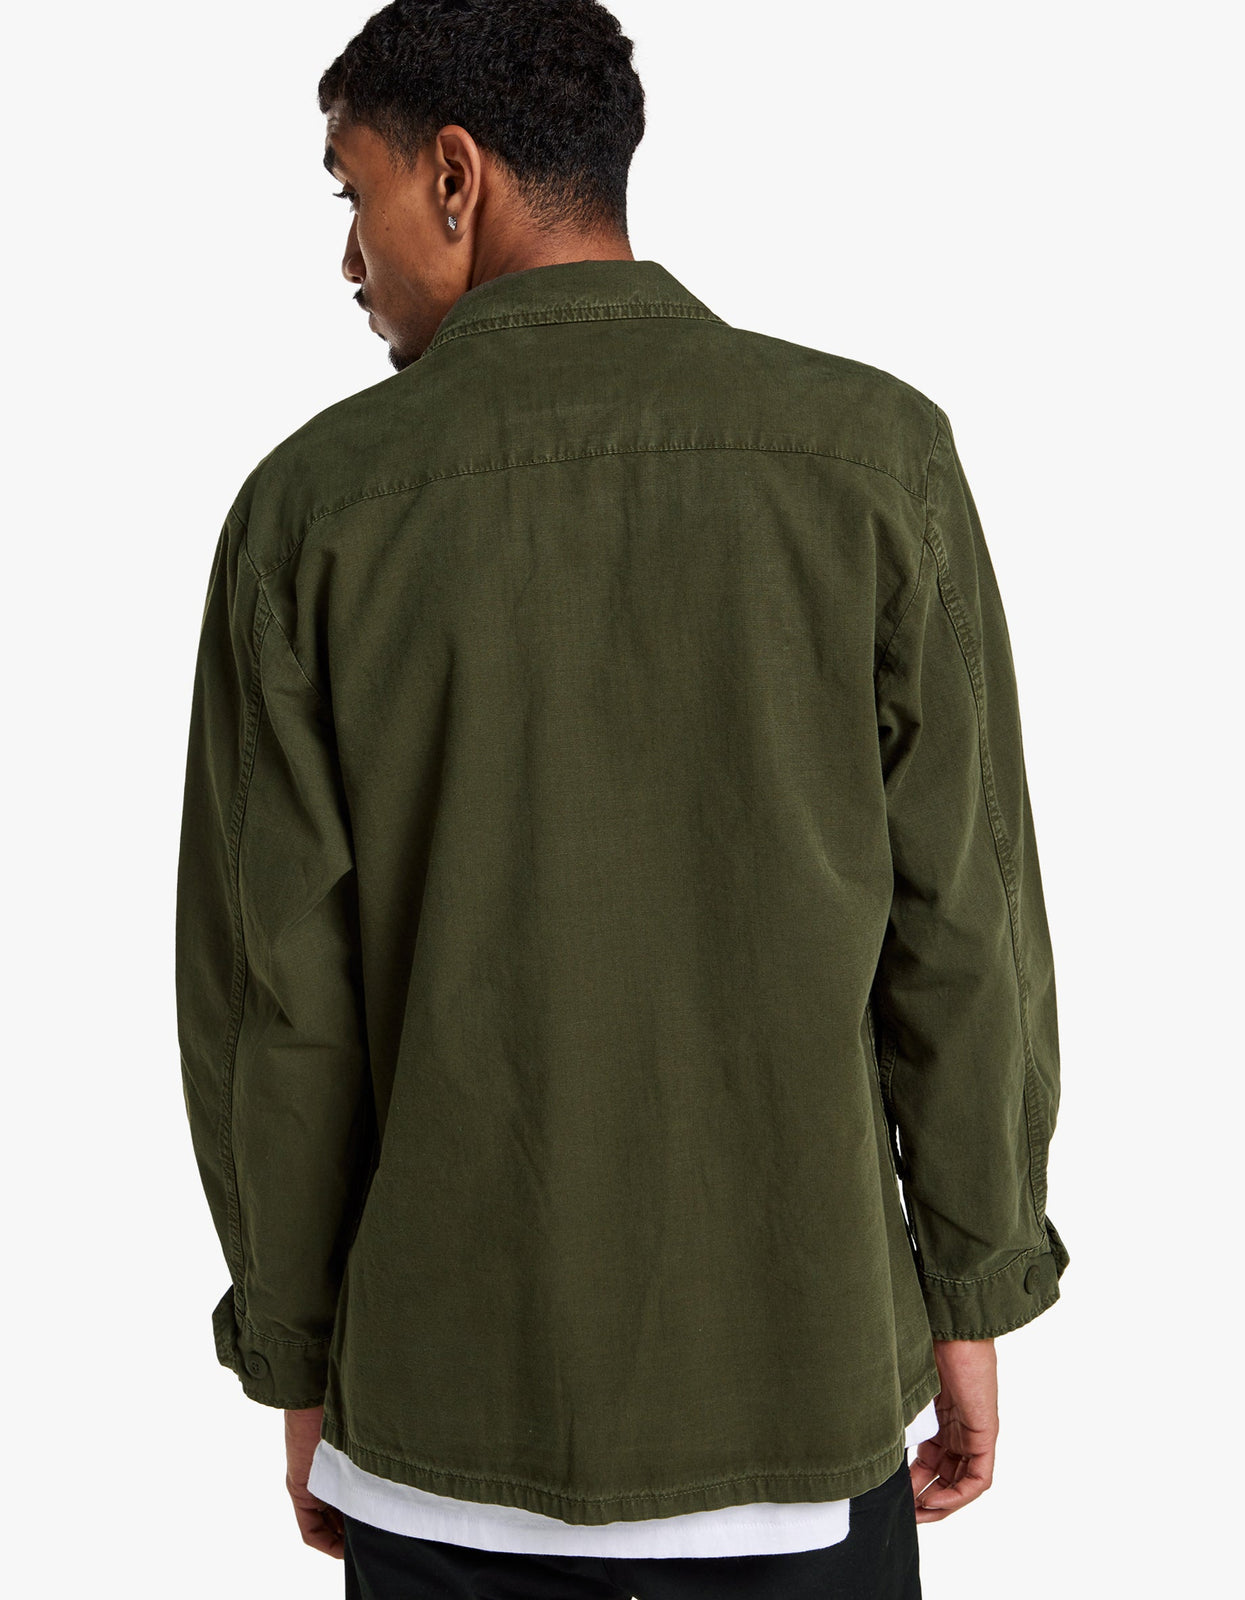 https://superette.co.nz/cdn/shop/products/jungle-fatigue-shirt-jacket-dark-green-alpmsj52000c1-0393659001679433759.jpg?v=1684468471&height=1600